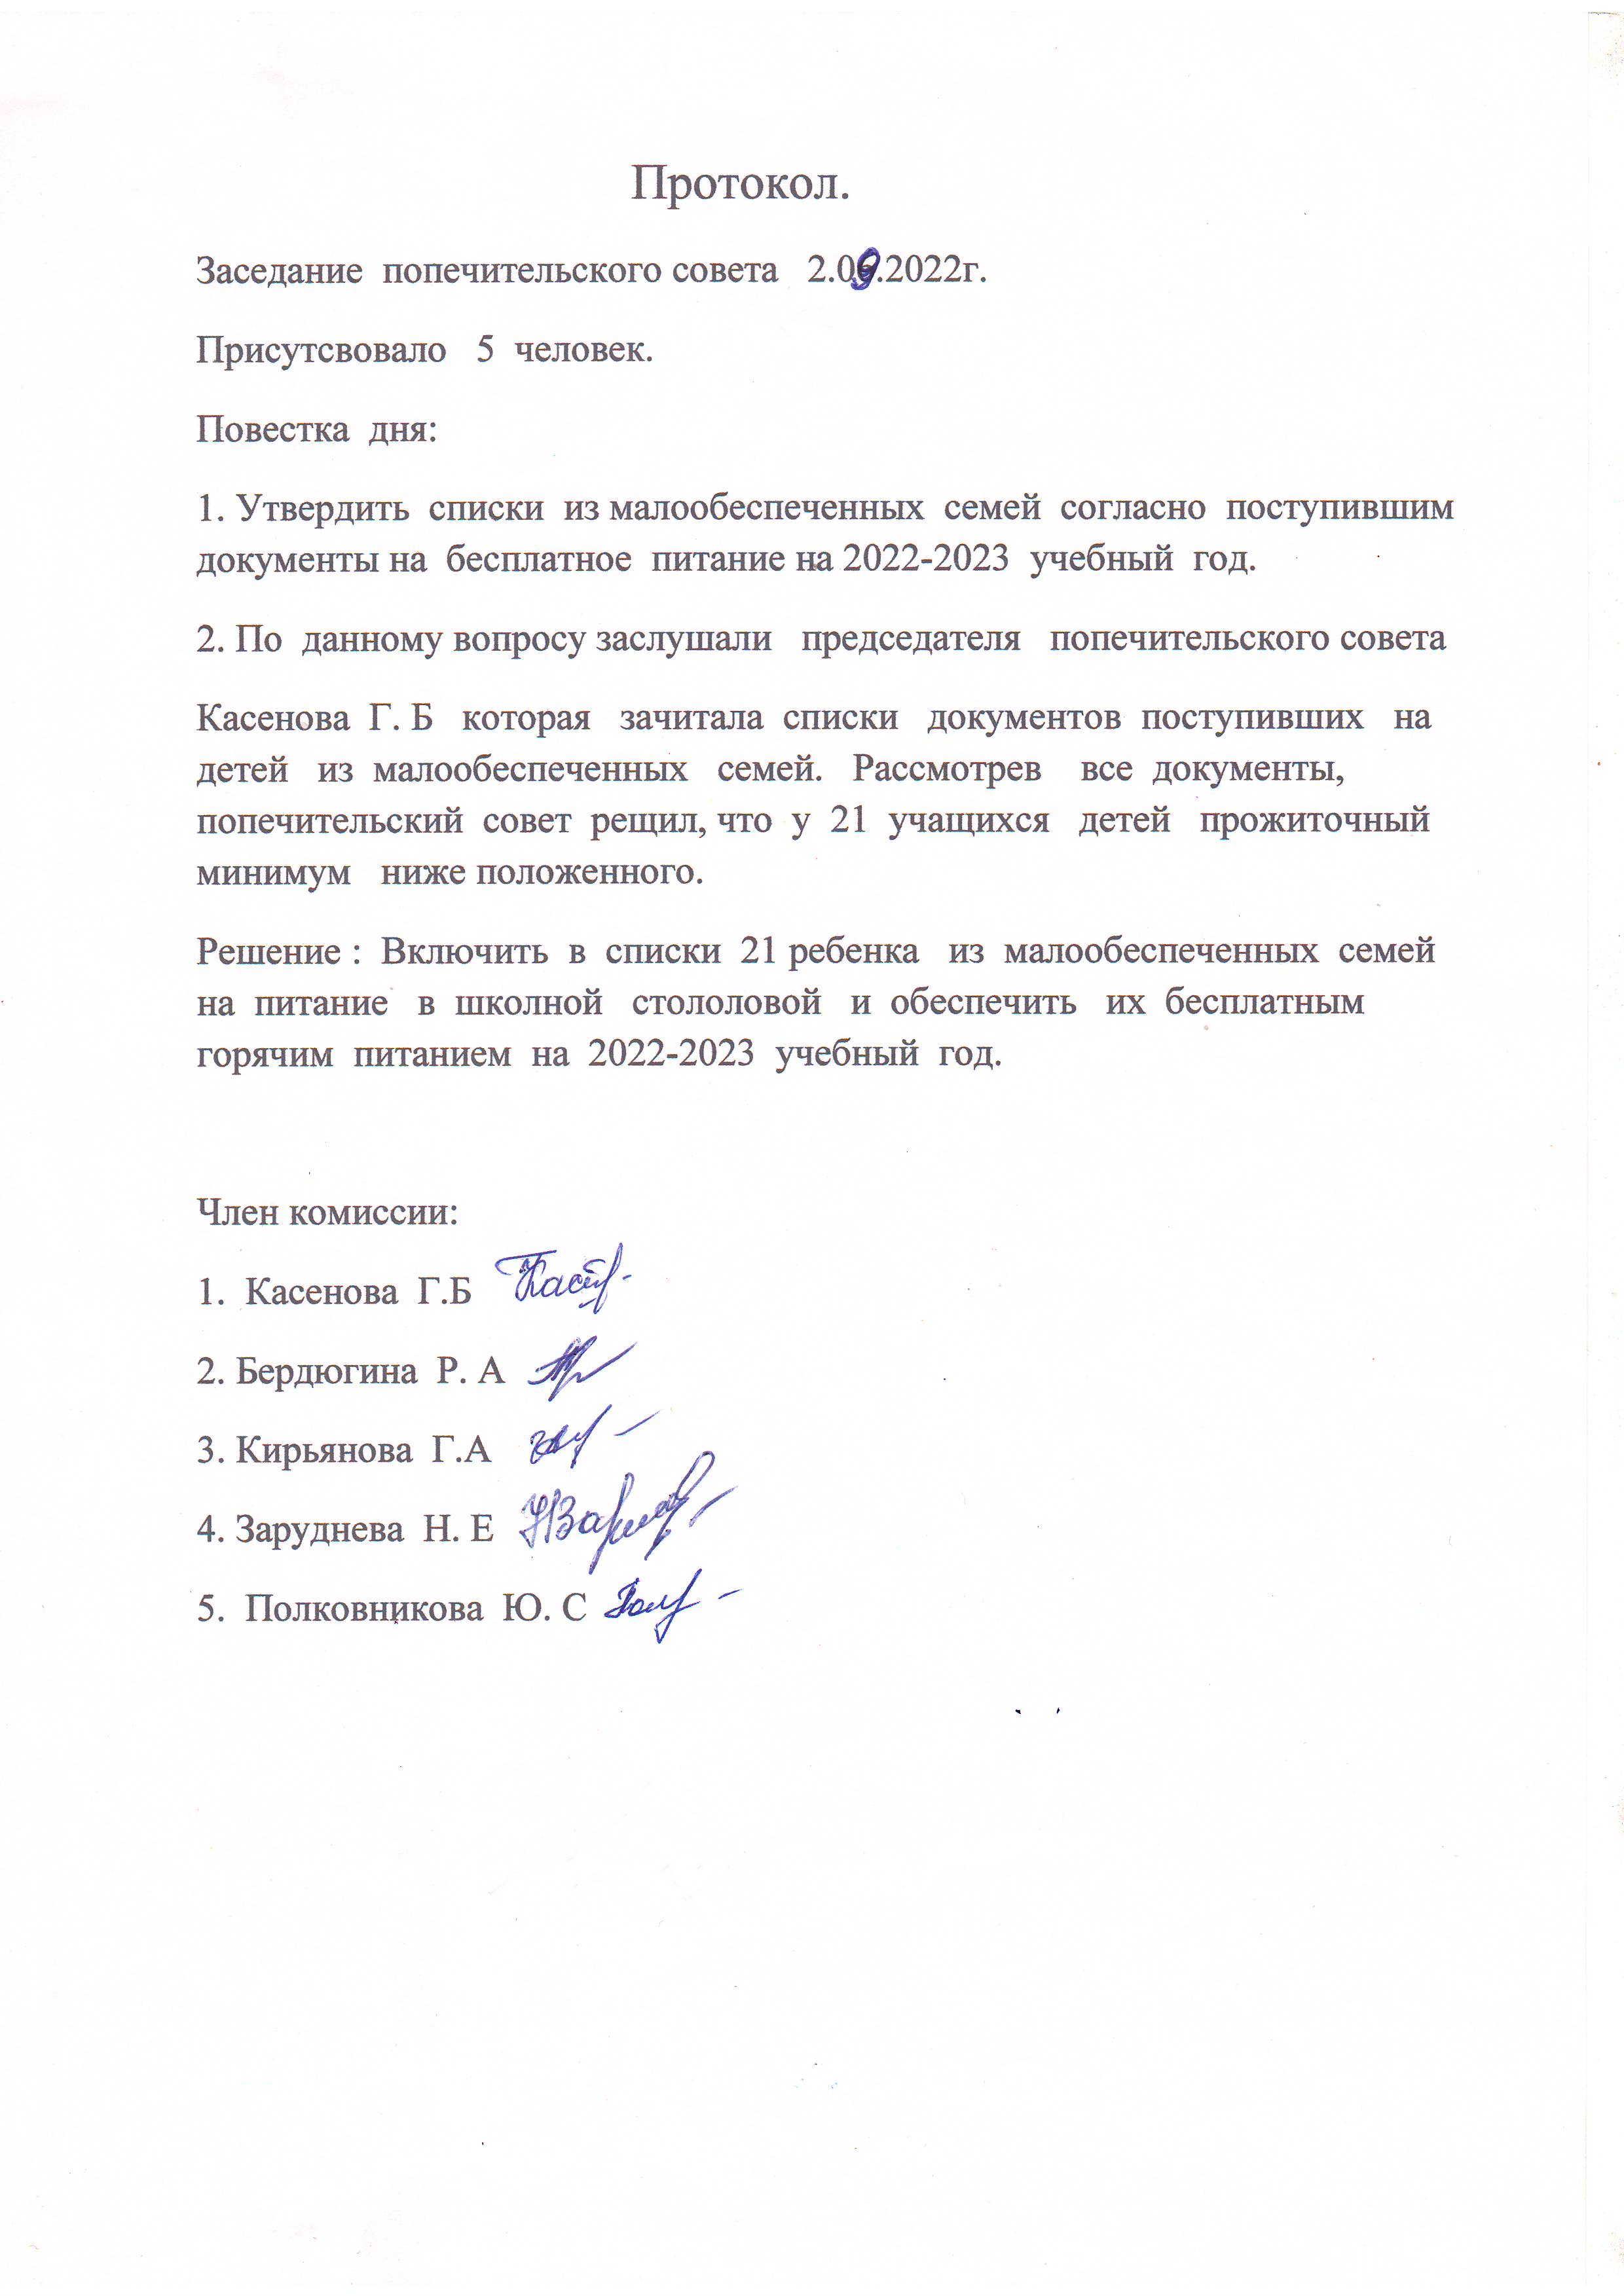 Протокол заседания Попечительского совета от 02.09.2022 года